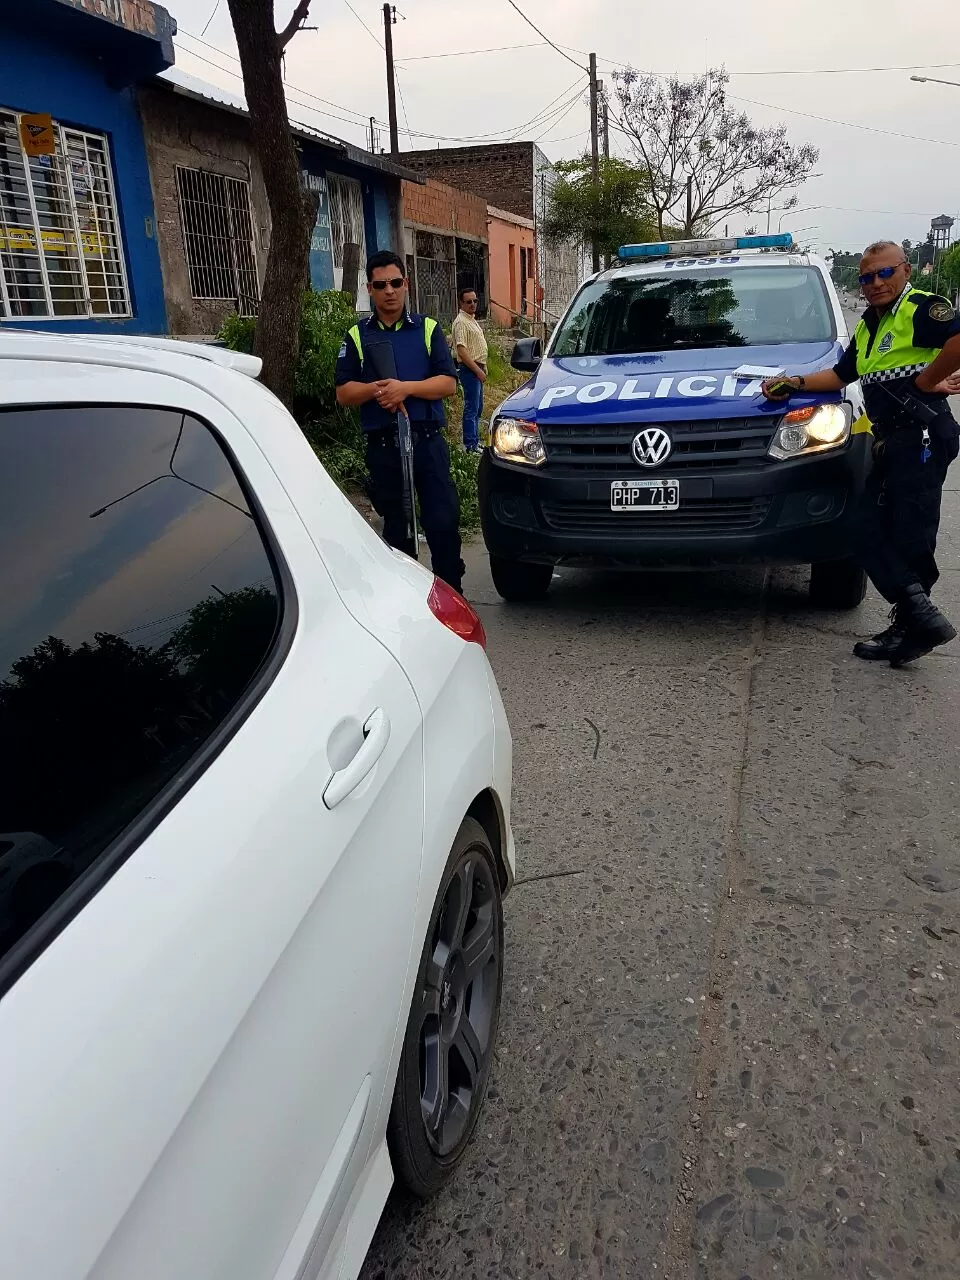 UNIFORMADOS. Según Gutiérrez, los dos policías le faltaron el respeto. foto de legislador josé gutierrez